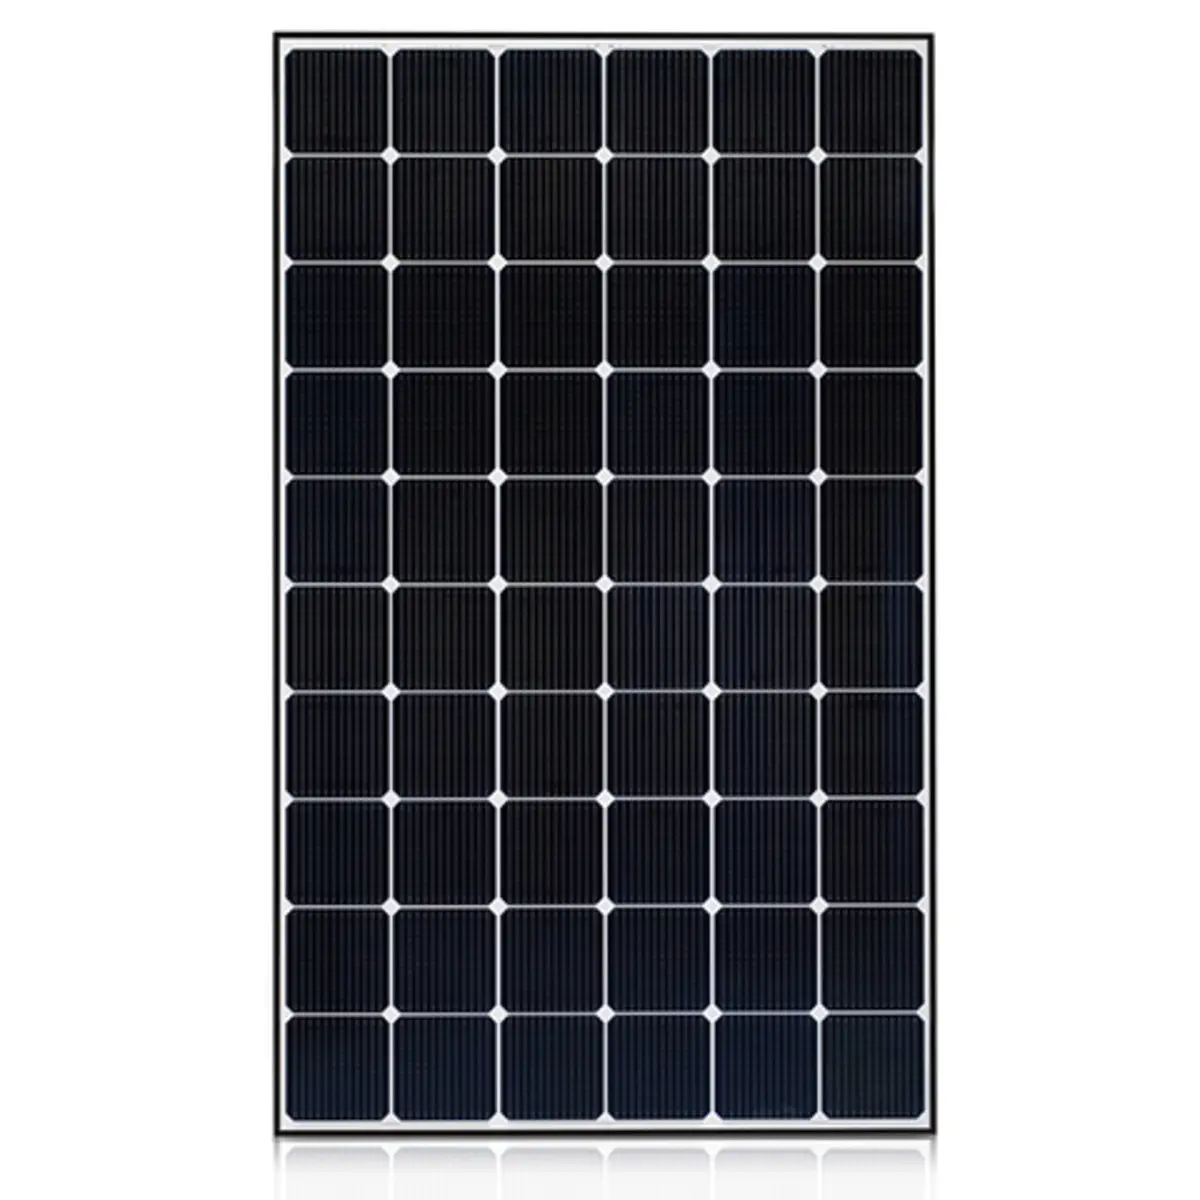 Modul panel tenaga surya 150W polikristalin tenaga surya untuk pemanas air